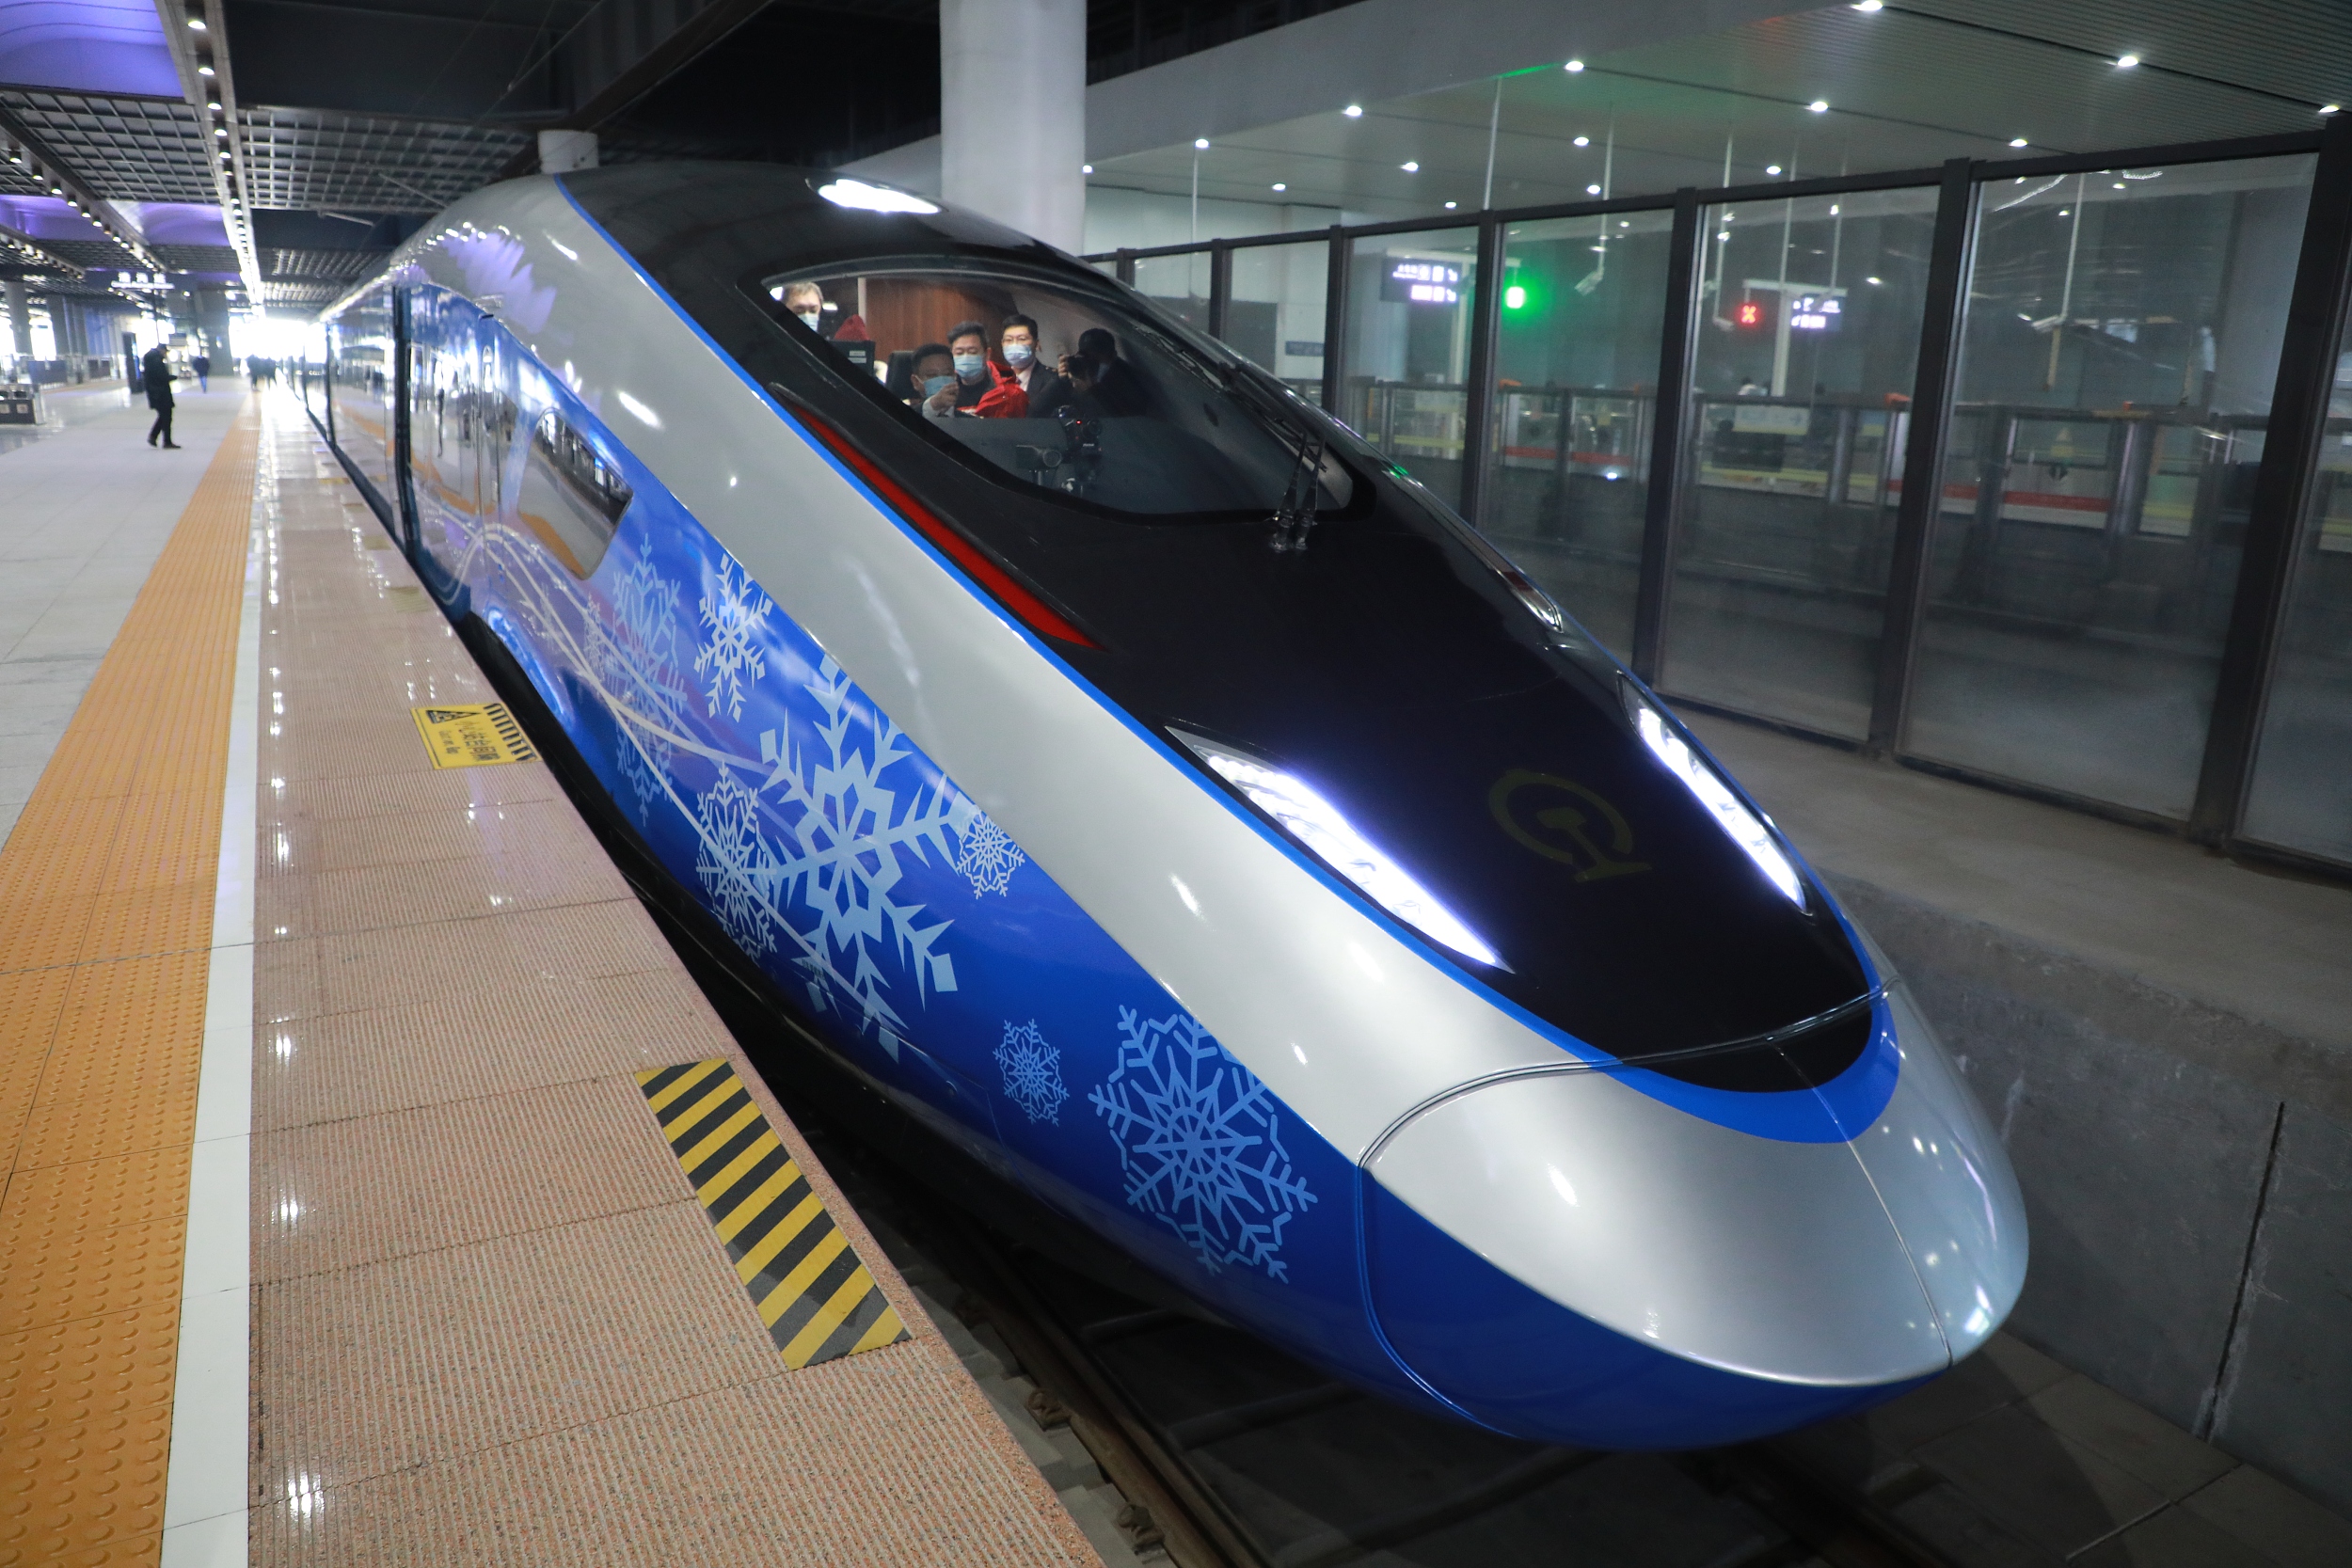 北京冬奧列車亮相京張高鐵 擁有全球首個5G超高清演播室